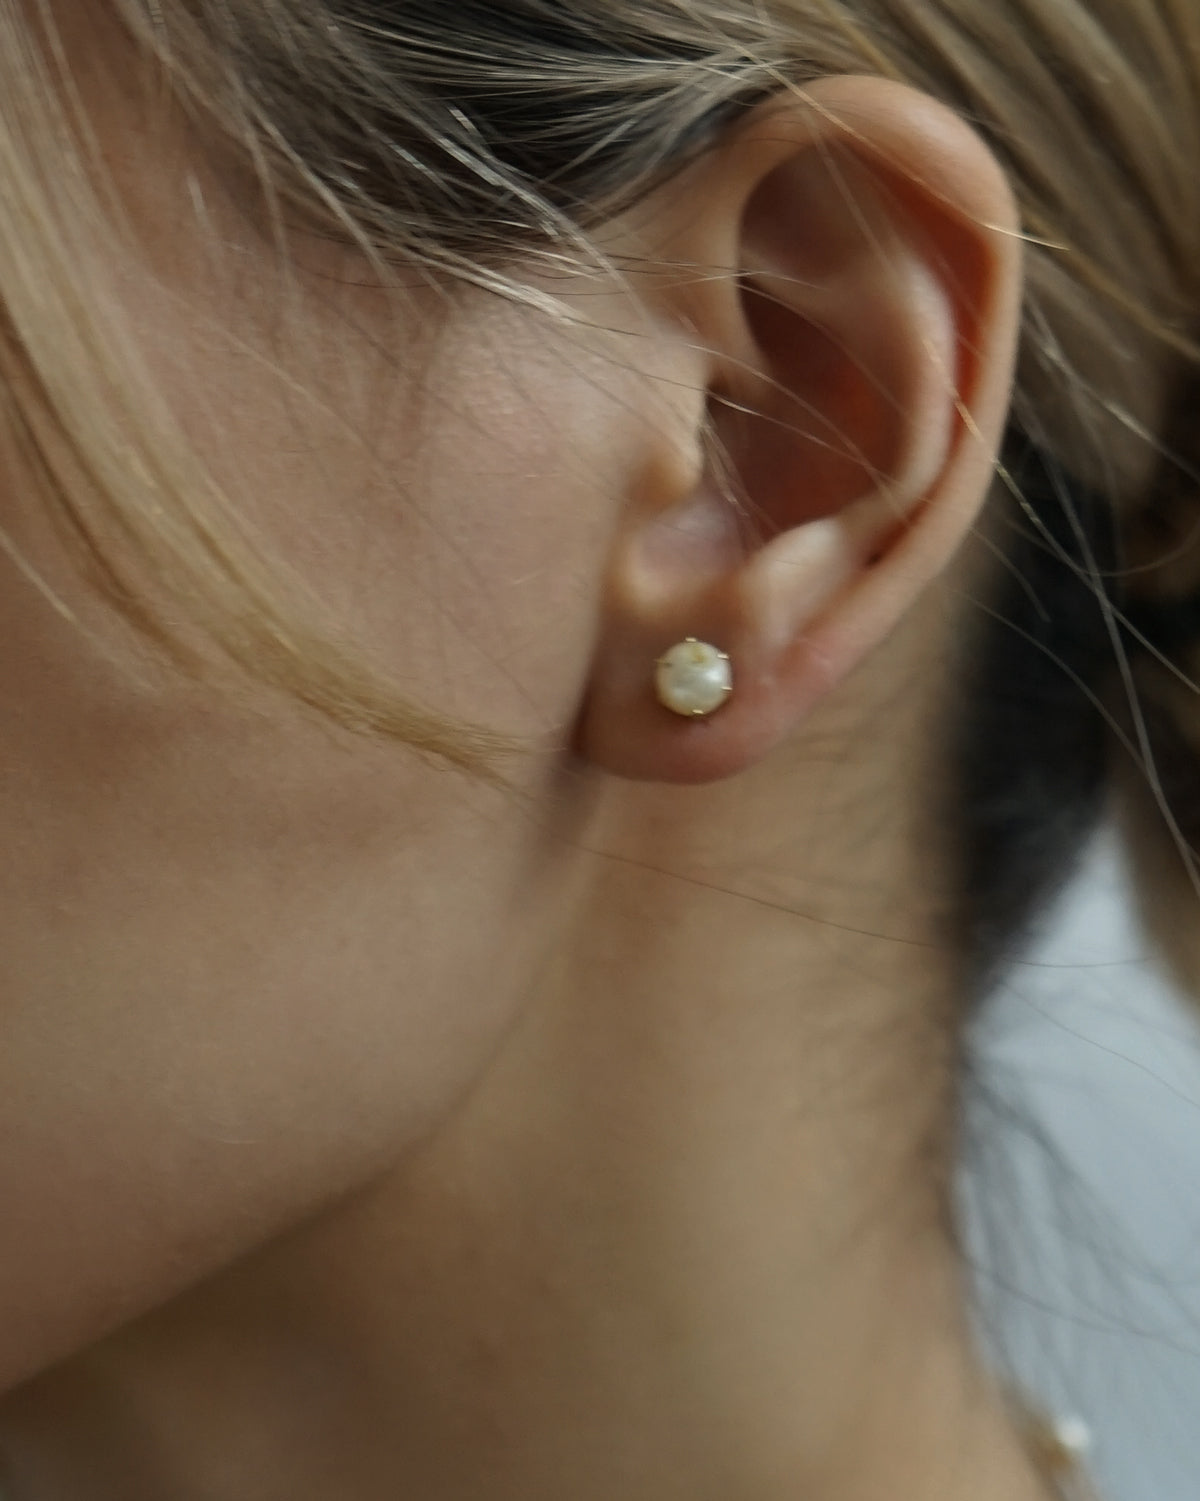 14k Gold x Pearl Earring